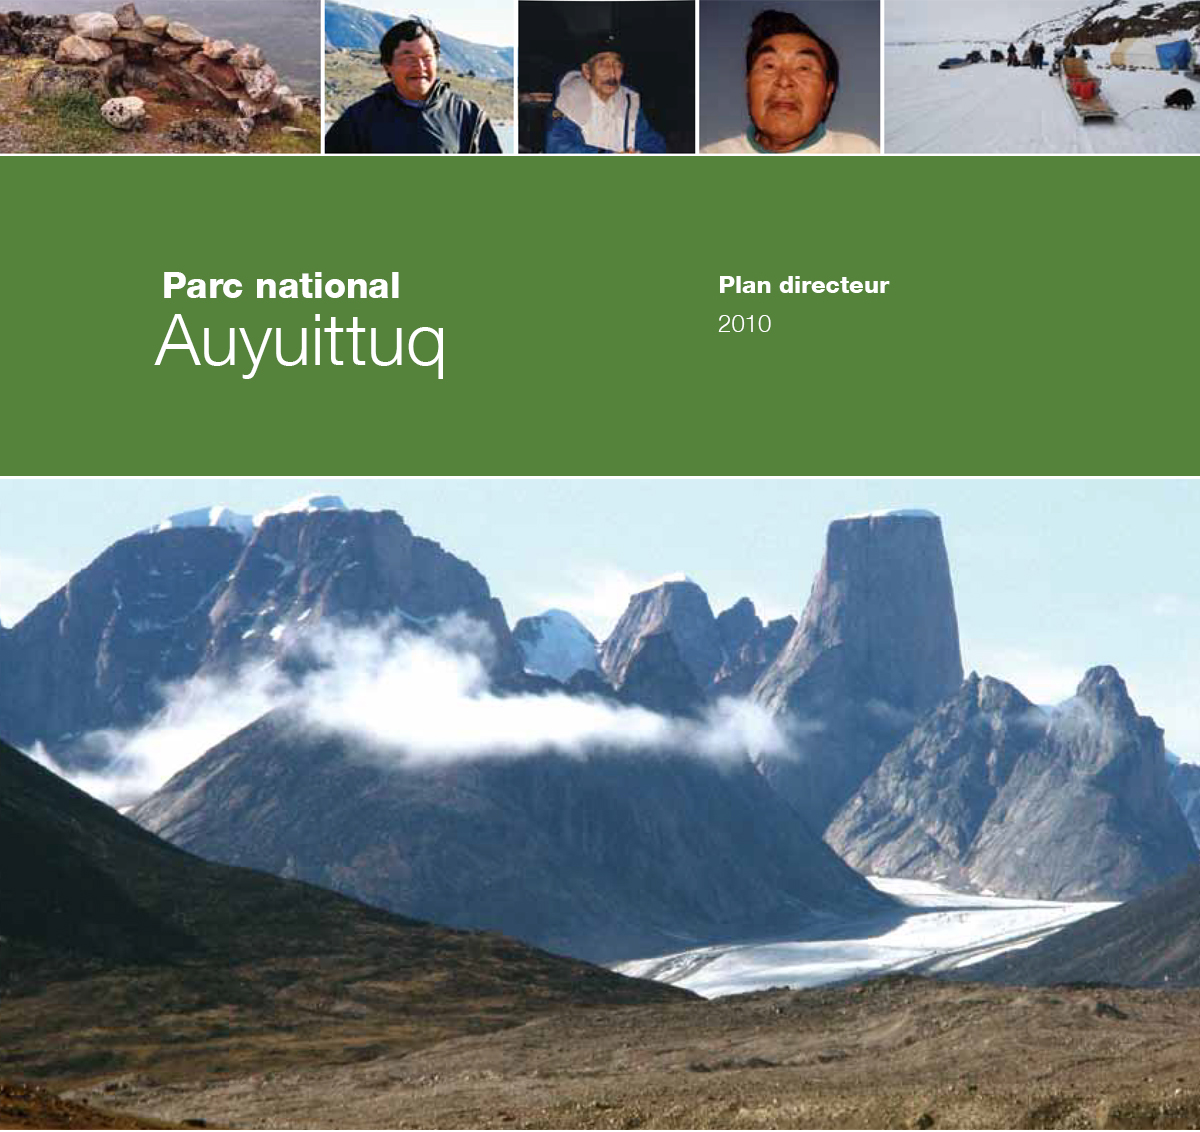 Parc national Auyuittuq plan directeur 2010